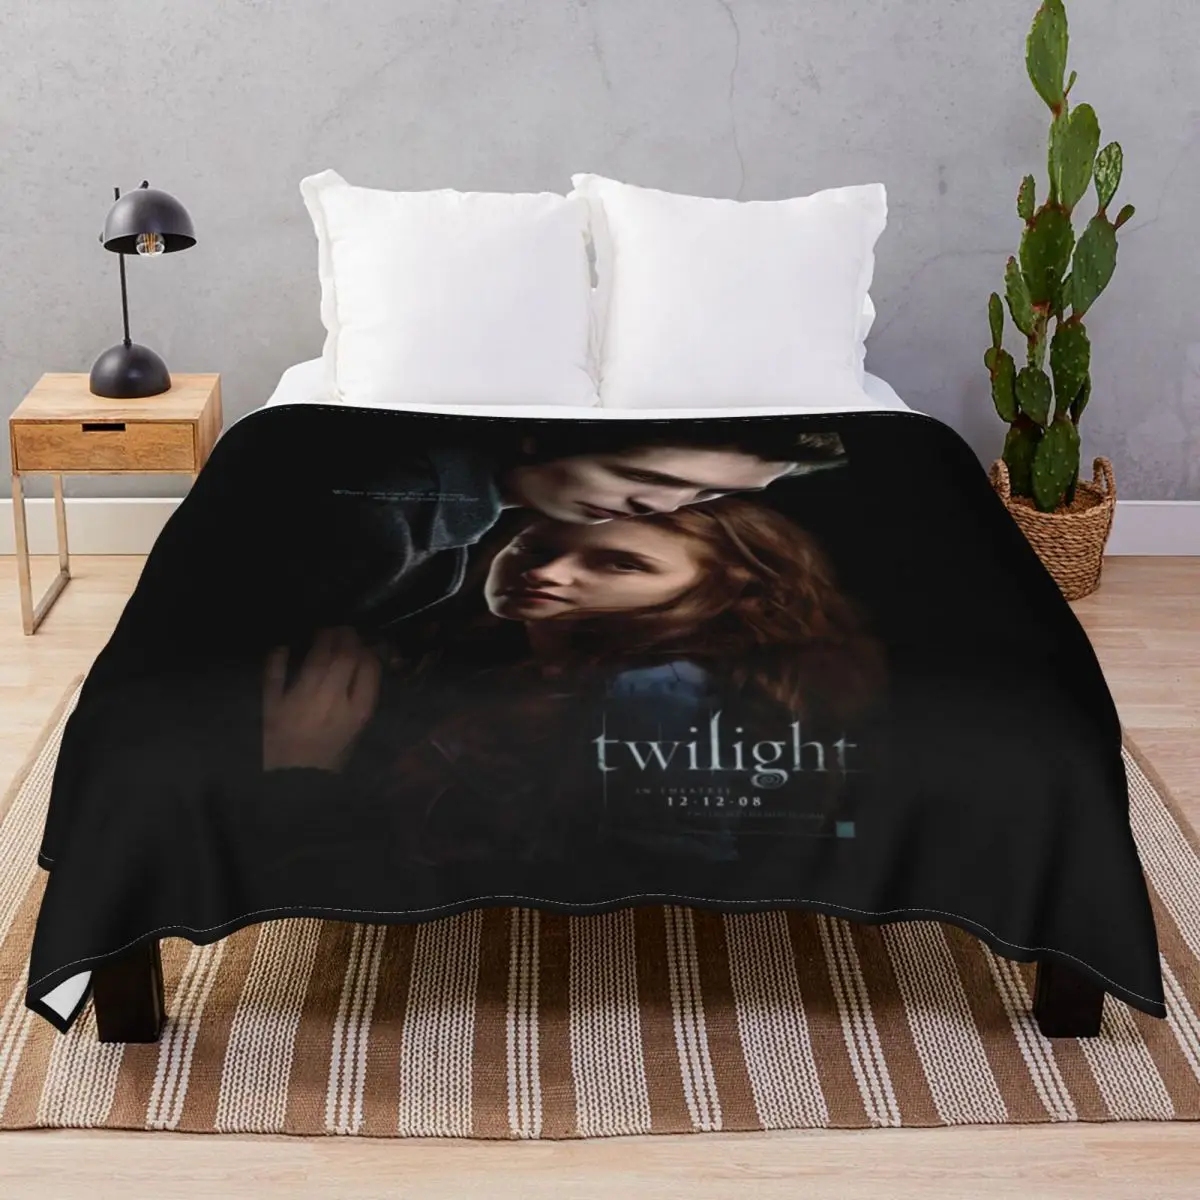 Twilight Blankets Velvet Spring Autumn Super Warm Unisex Throw Blanket for Bedding Sofa Camp Office